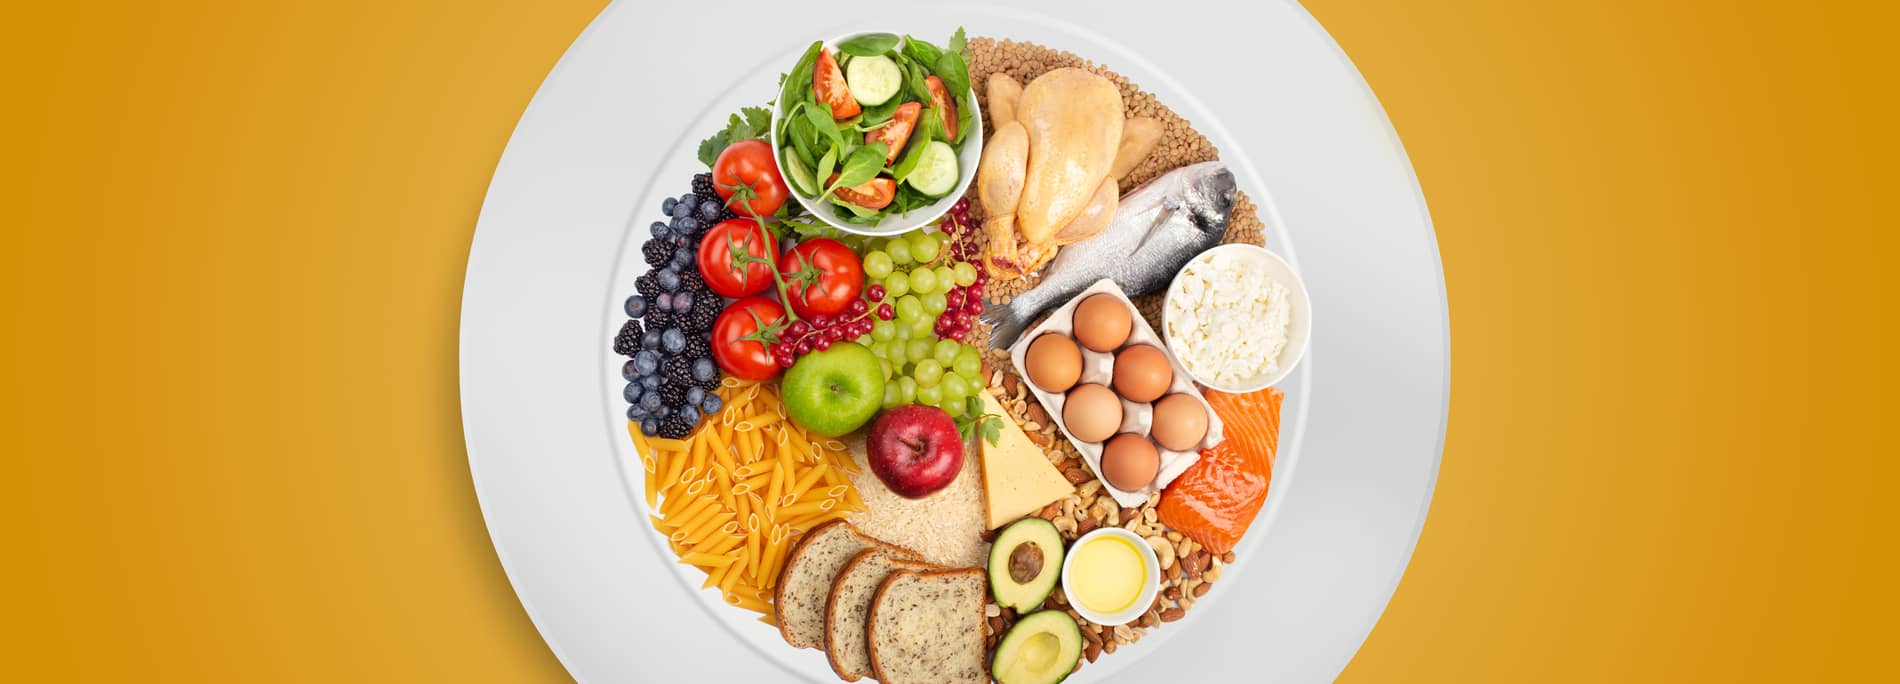 El plato para comer saludable, la mejor guía de alimentación según Harvard